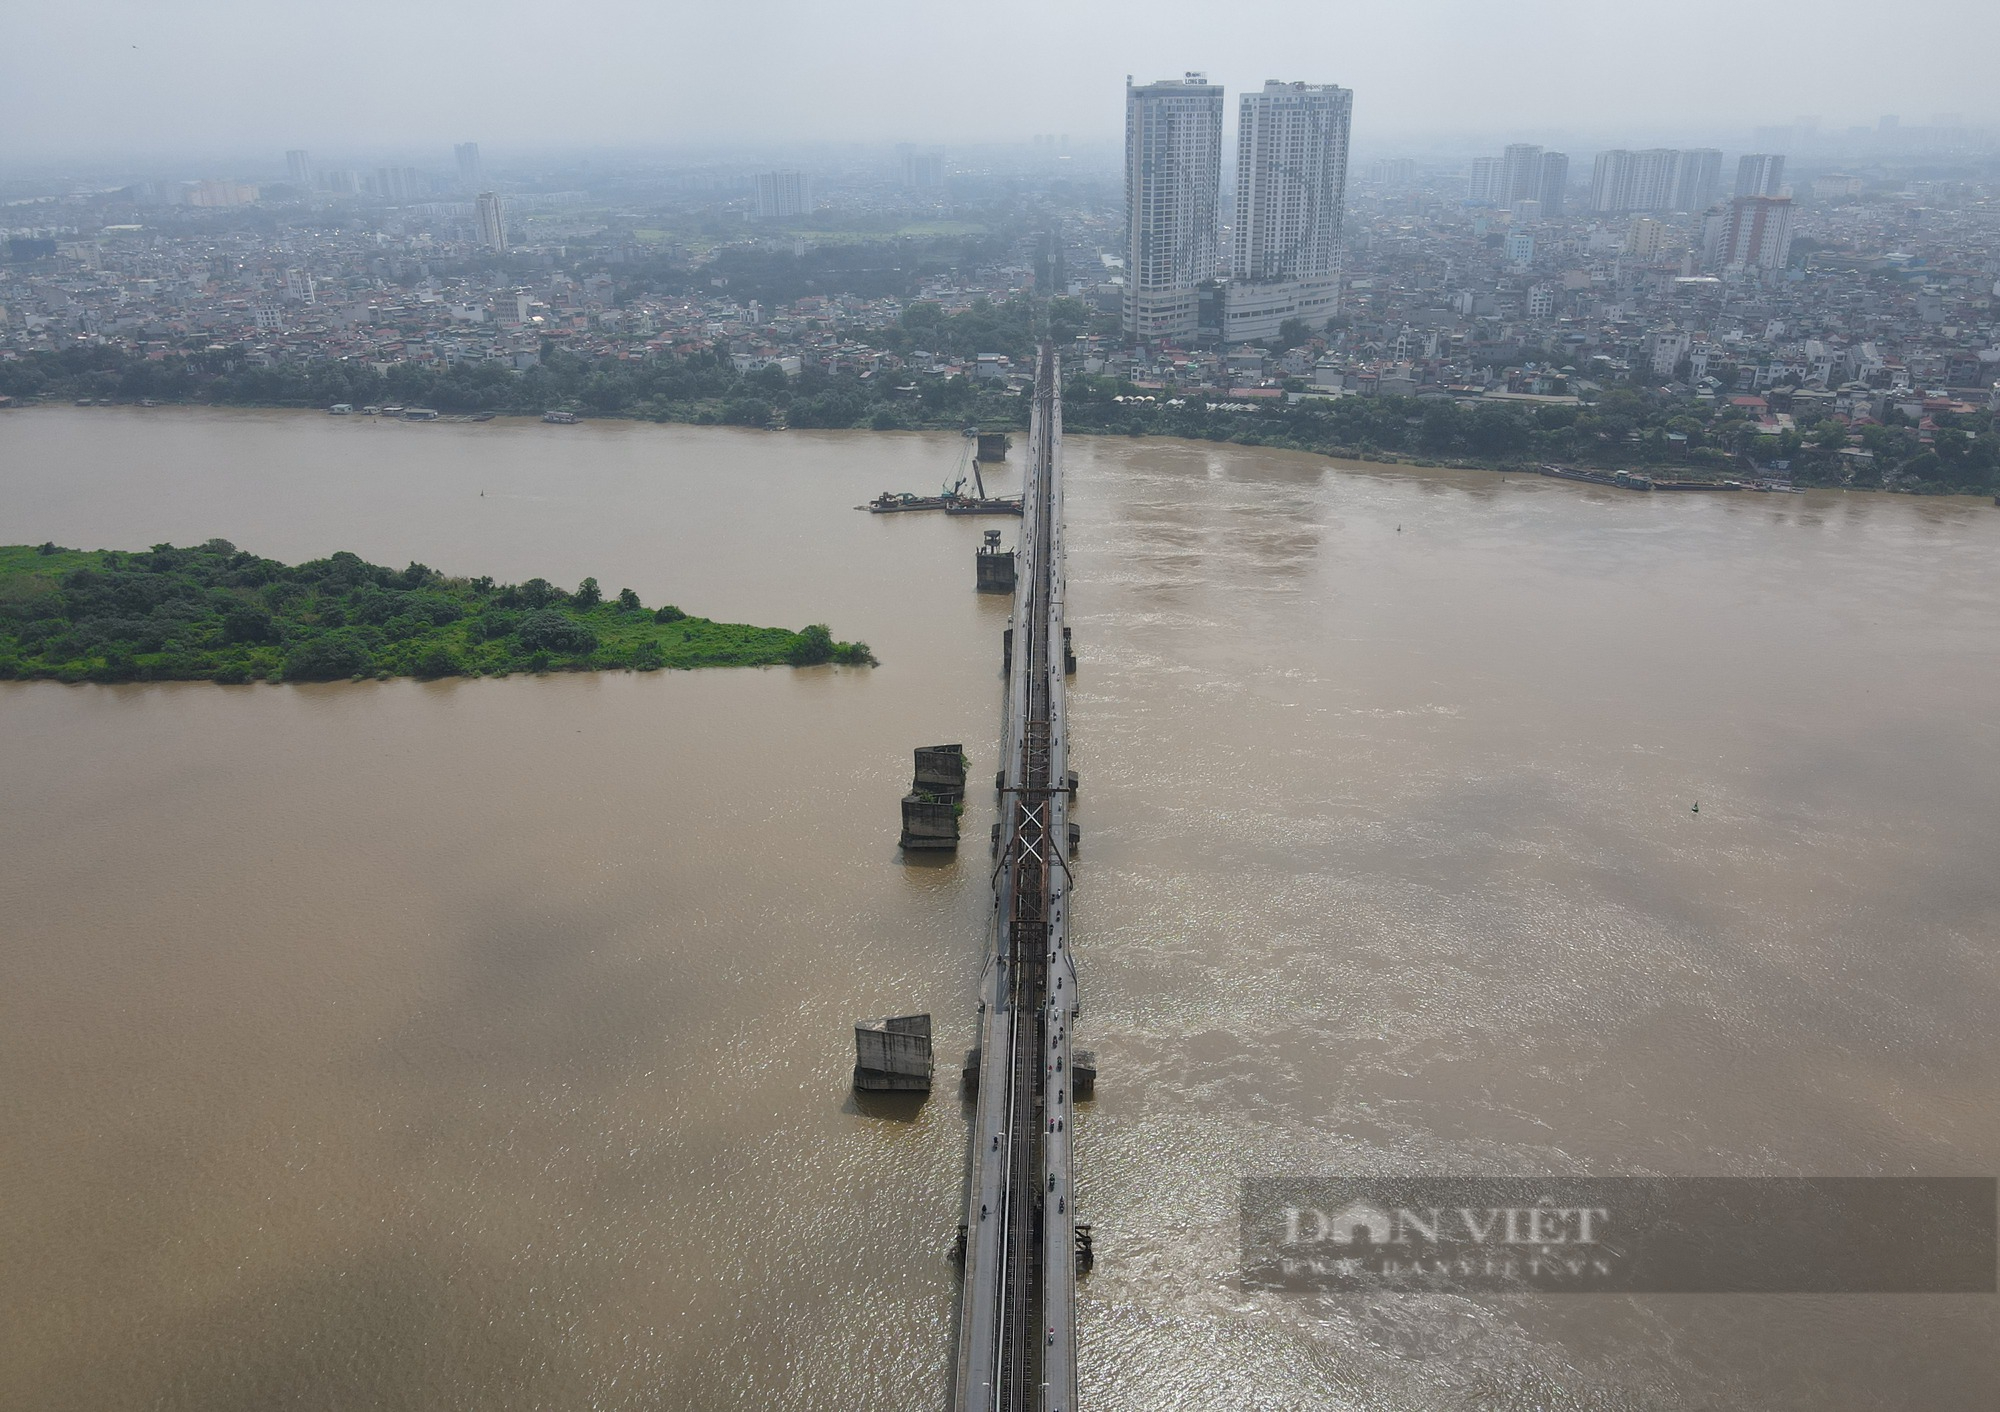 Cầu Long Biên, cây cầu bằng thép lớn tuổi nhất Việt Nam xuống cấp nghiêm trọng - Ảnh 3.